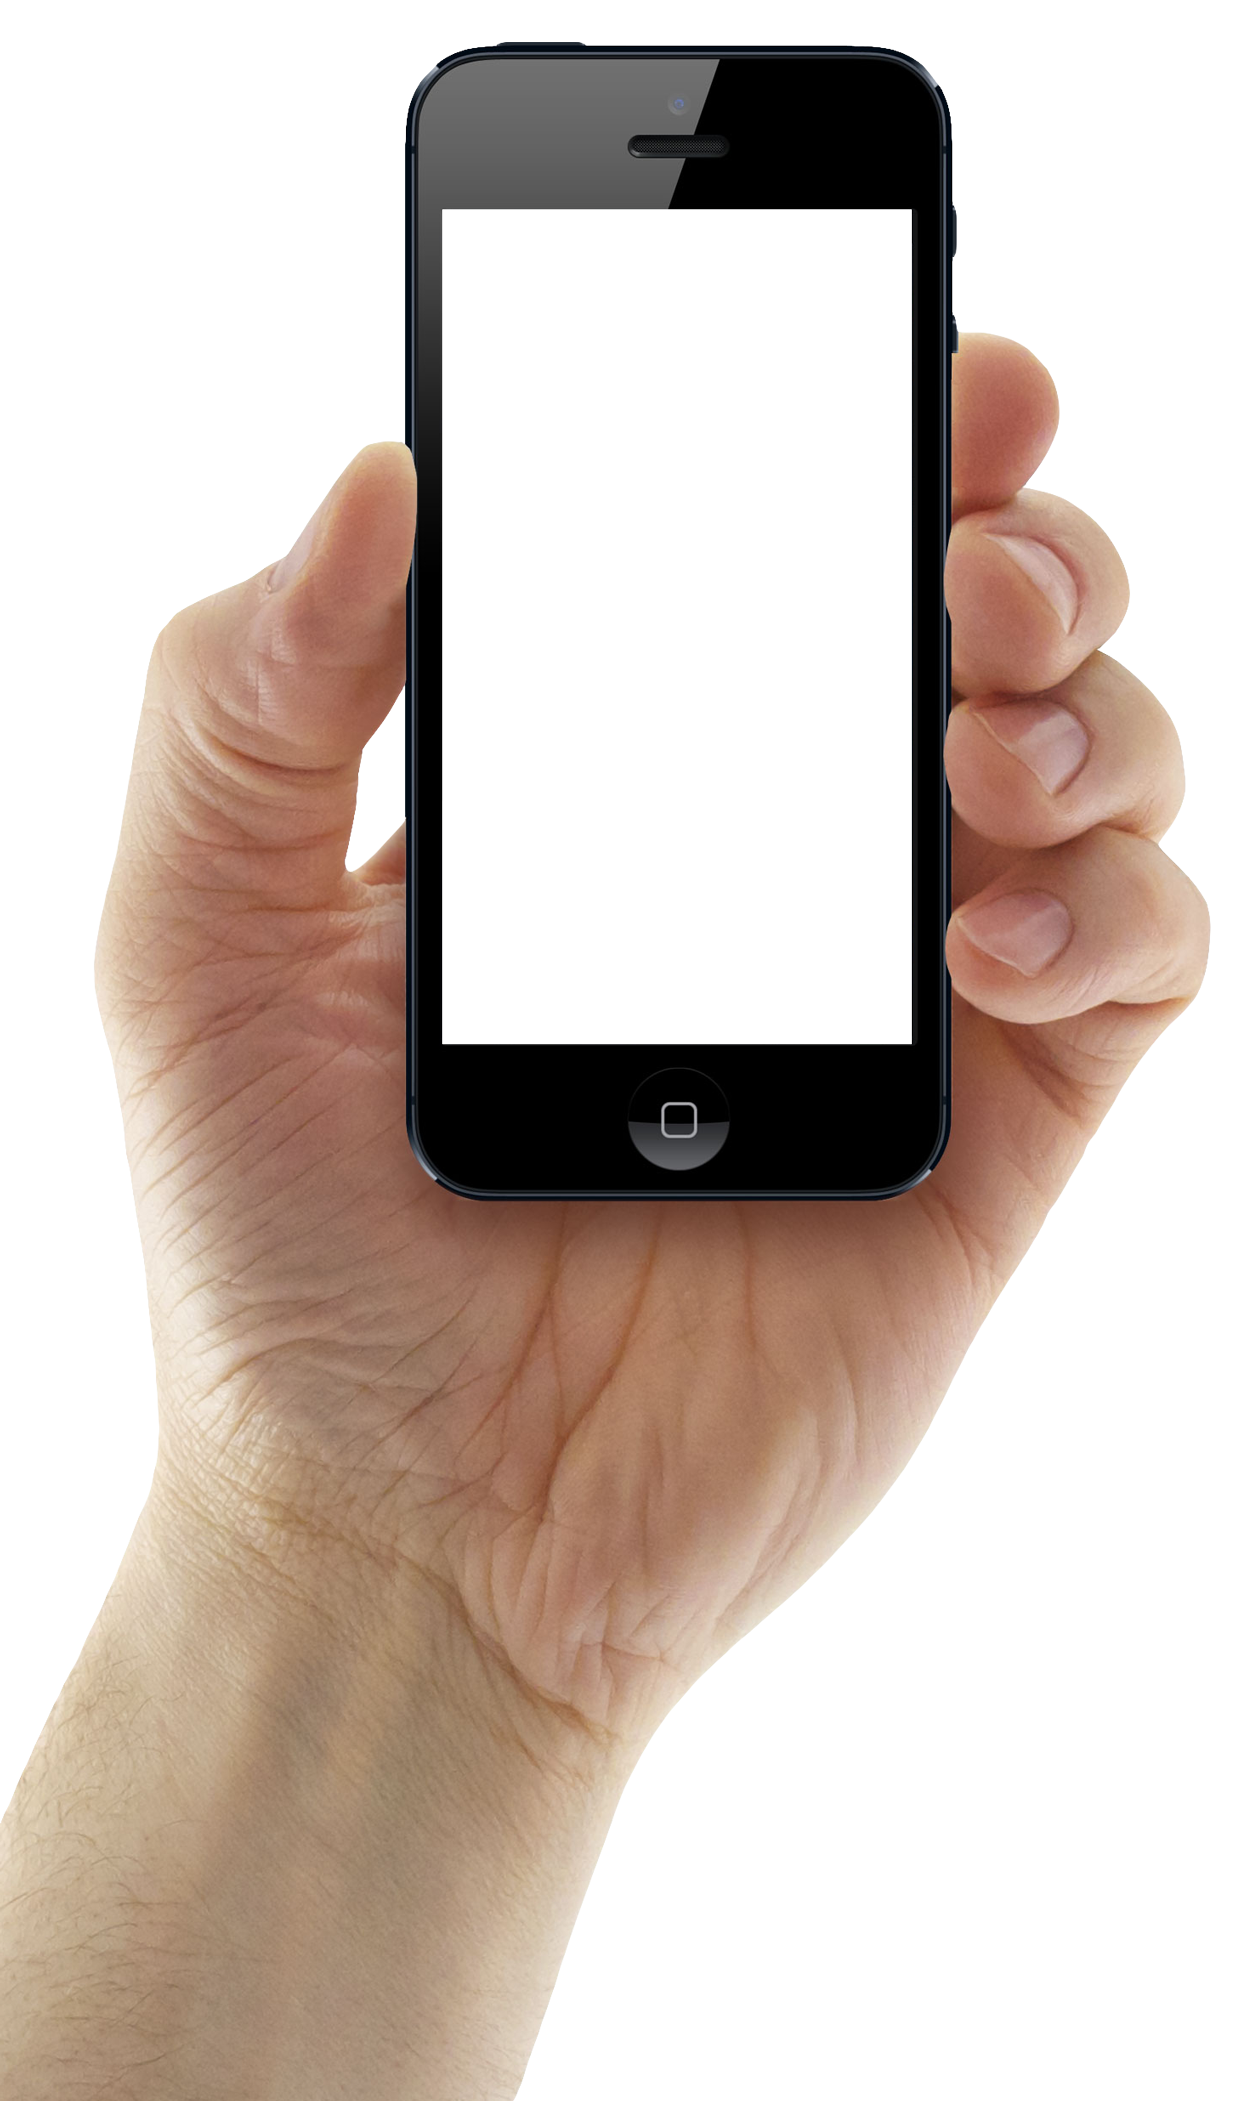 Фото в png на телефоне. Смартфон в руке. Смартфон в руке на прозрачном фоне. Рука держит телефон. Рука с телефоном на белом фоне.